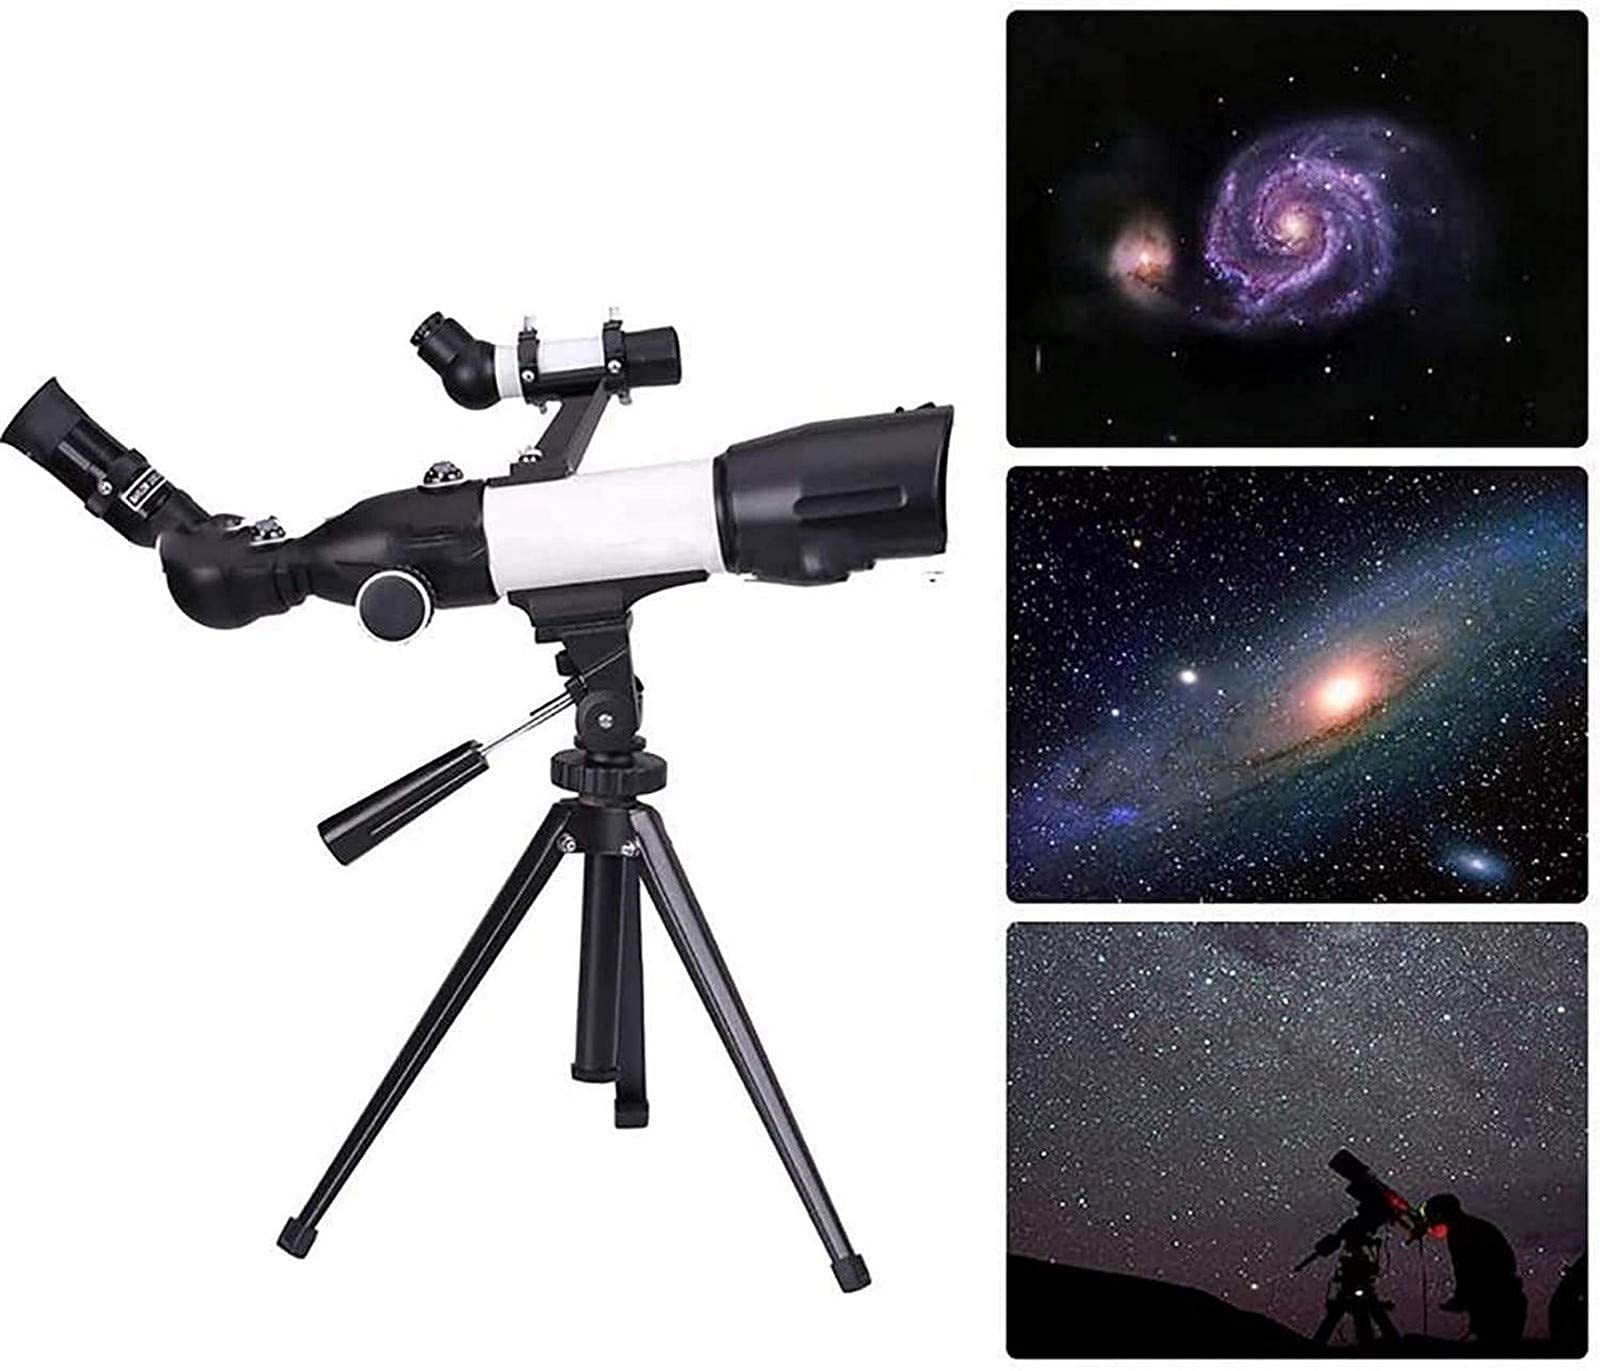 Teleskop, tragbarer 350 x 50 mm großer astronomischer Refraktor, toller Partner, um Mond und Planeten zu sehen, perfekte Astronomie-Geschenke für Anfänger, kein Werkzeug erforderlich Warm as Ever